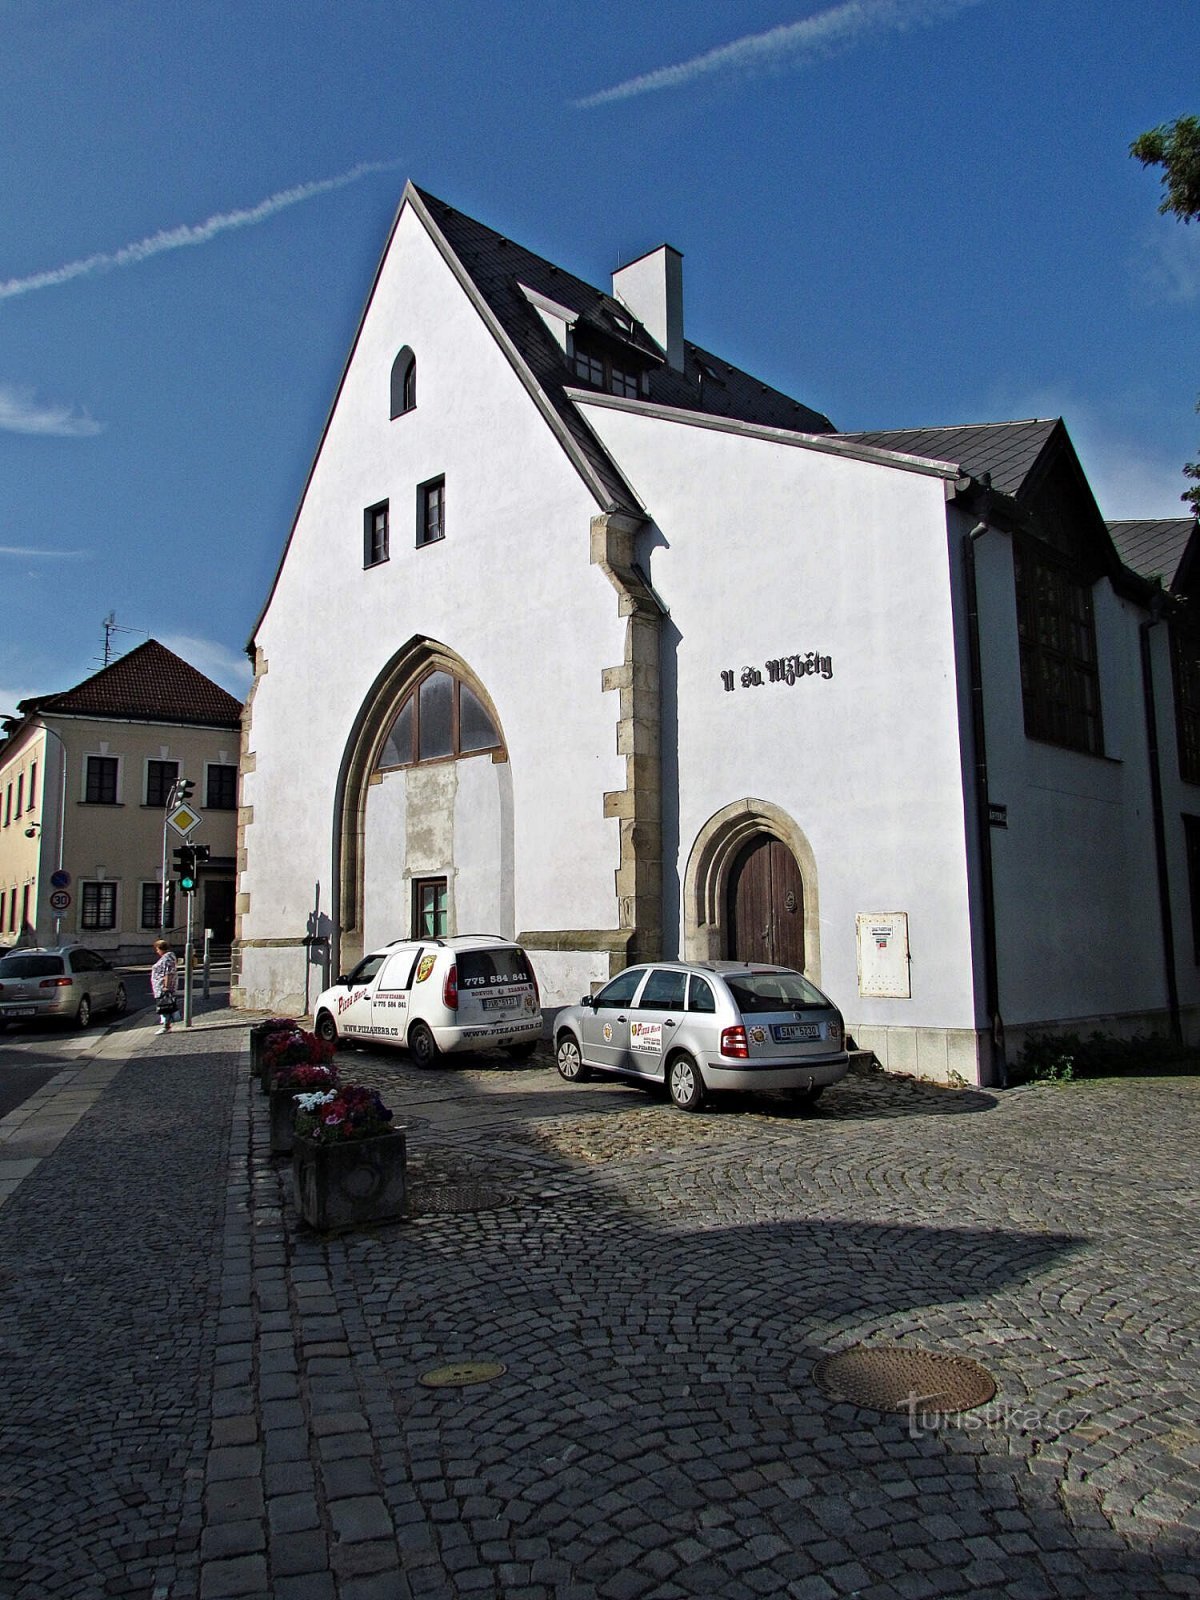 Jindřichův Hradec - the canceled church of St. Elizabeth